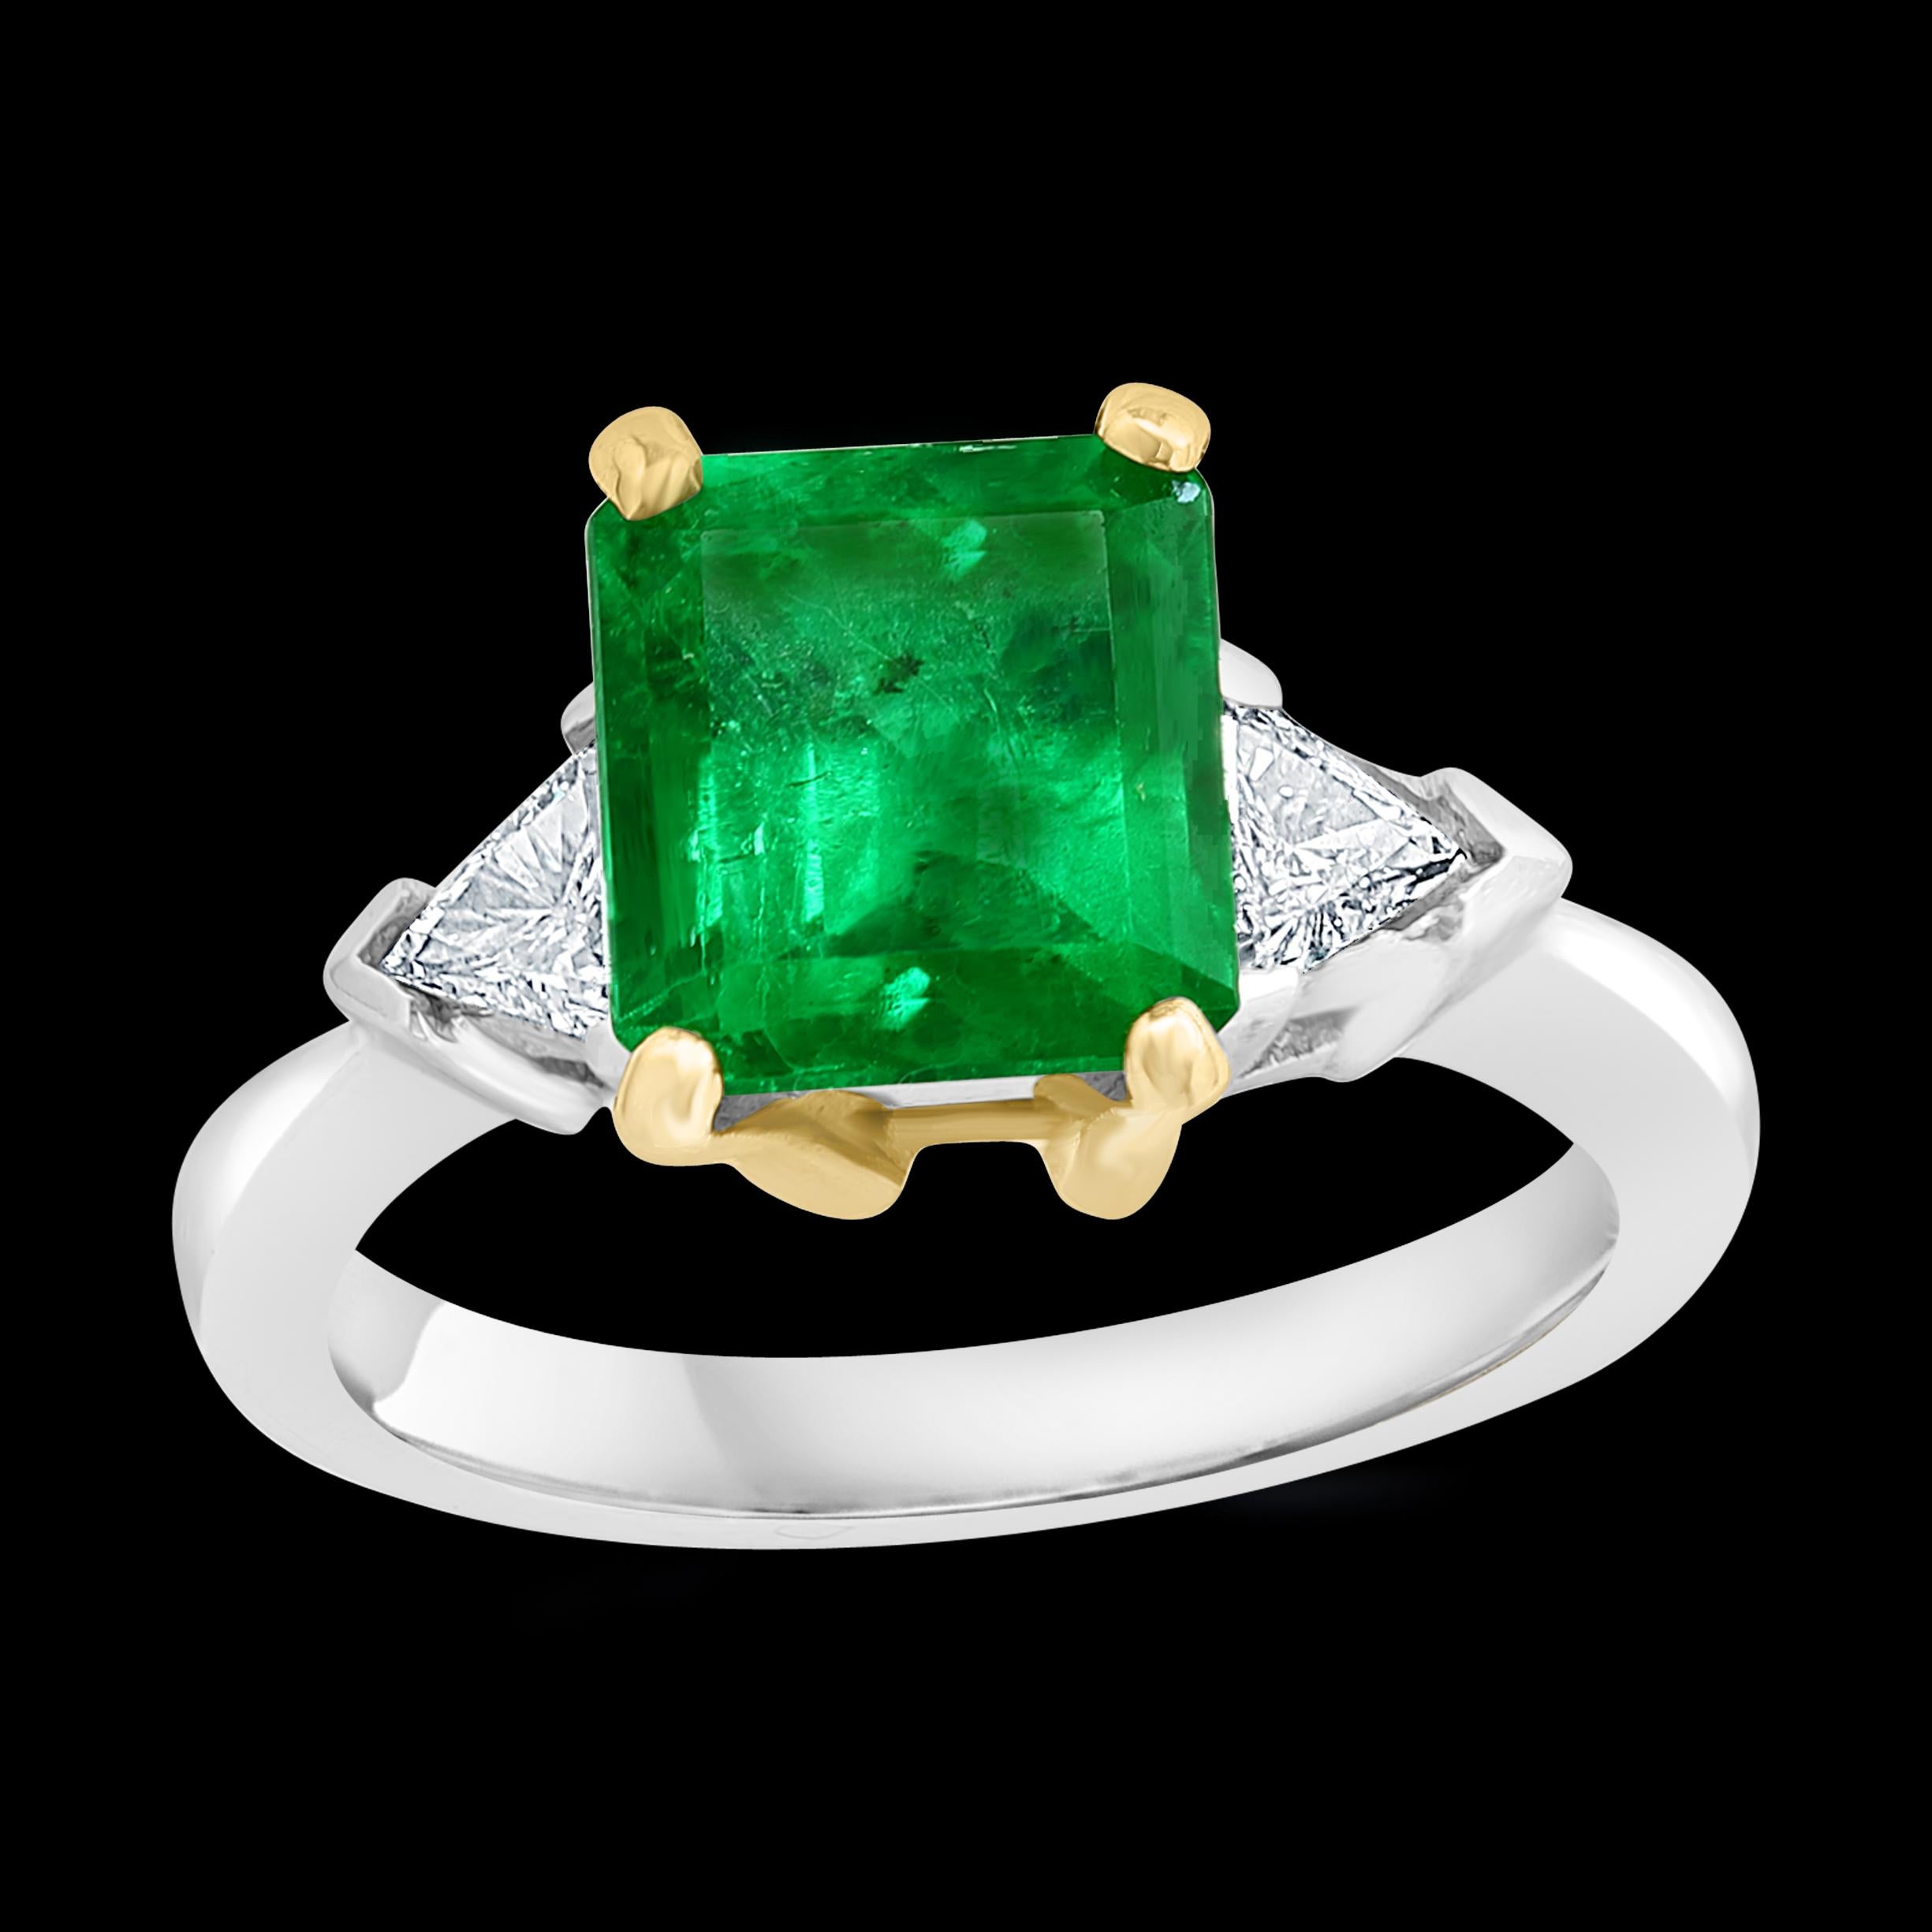 2.7 carat emerald cut diamond